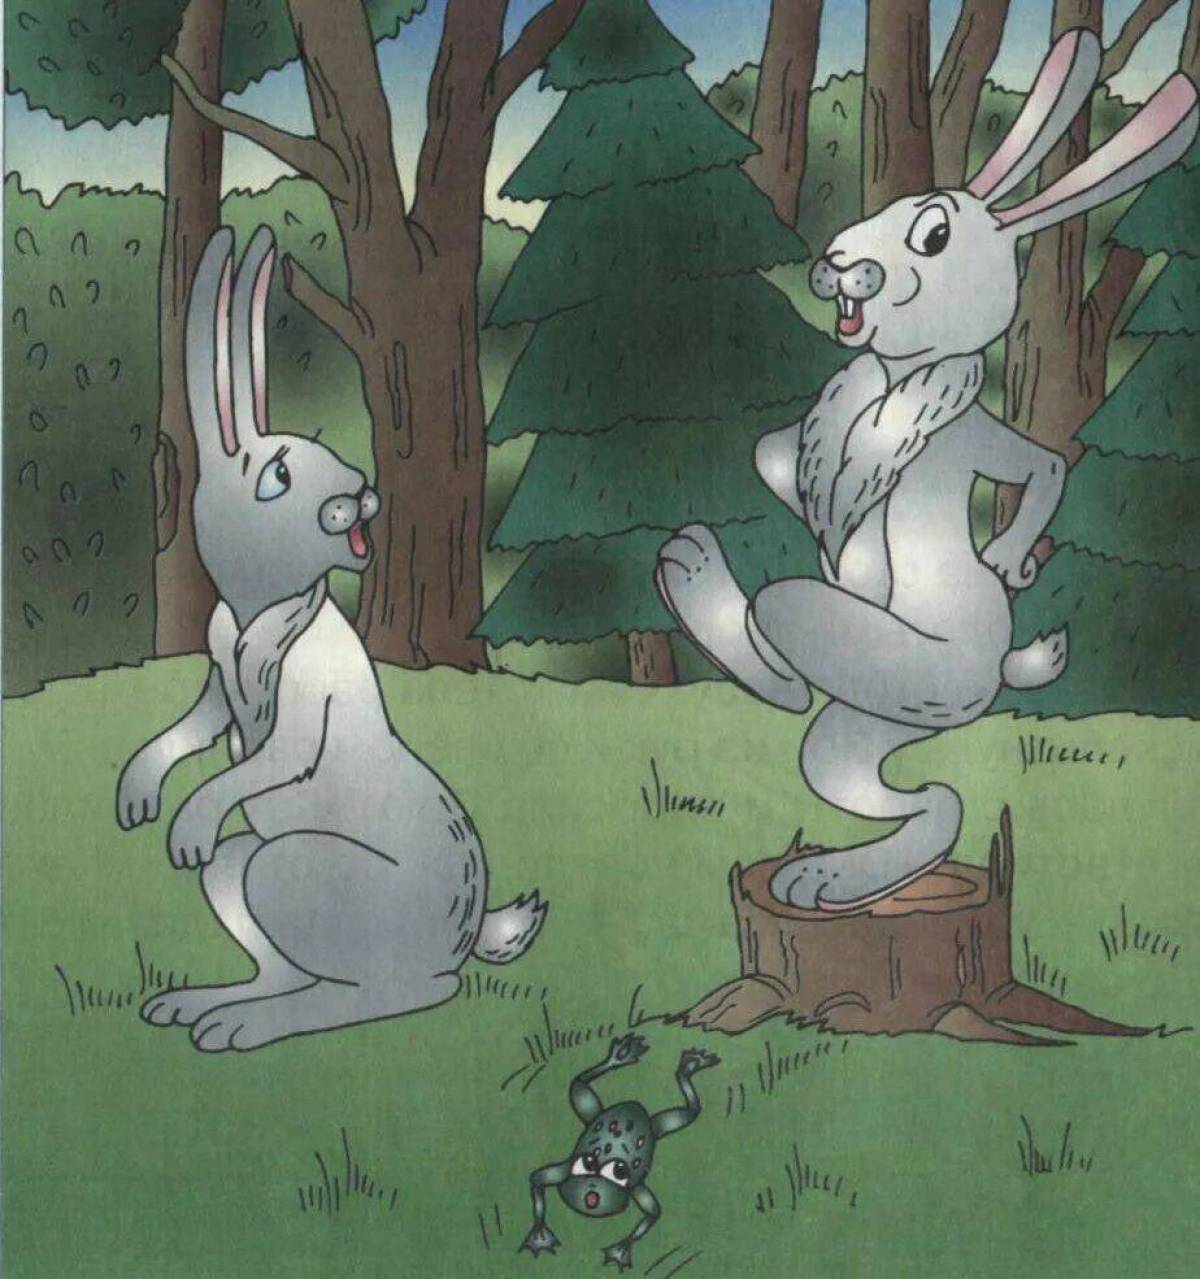 Сказка про храброго зайца длинные уши косые глаза короткий хвост #25